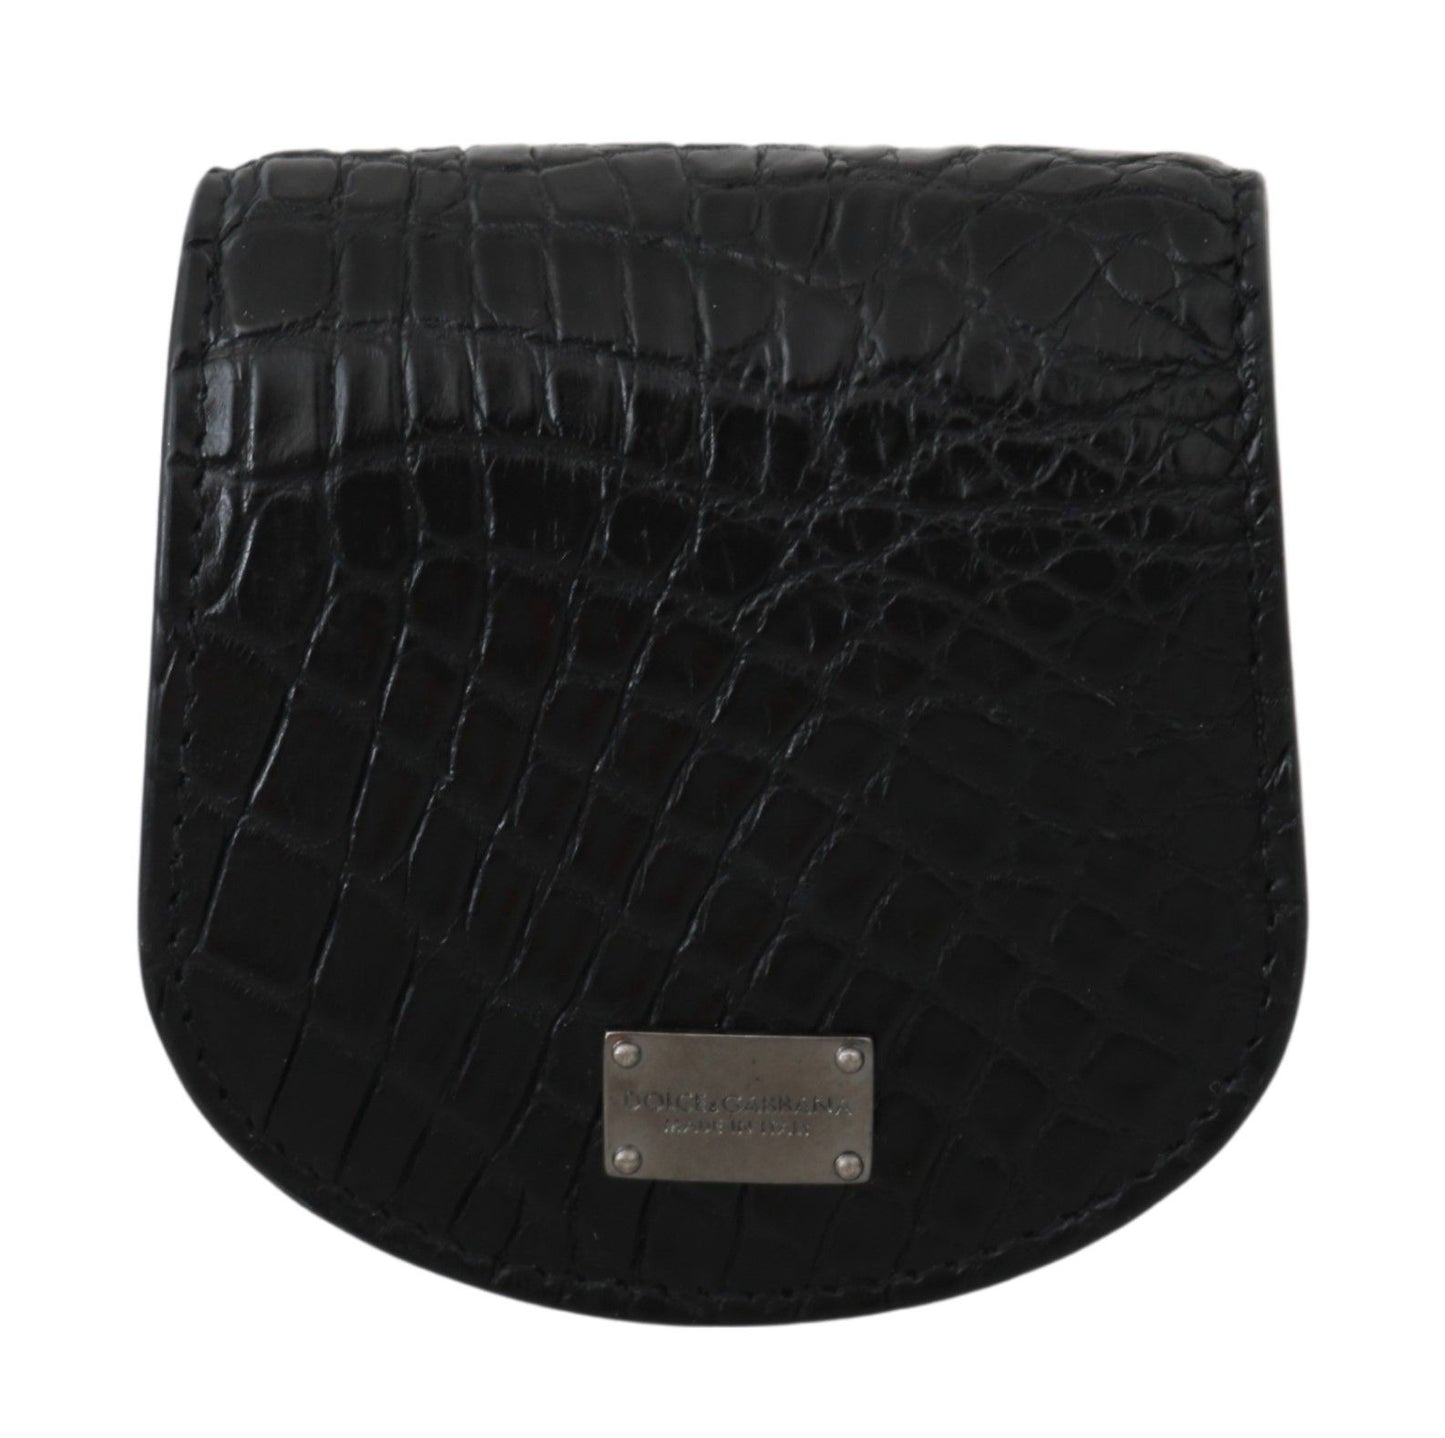 Dolce & Gabbana Black Exotic Skin Pocket Pocket Case Holder